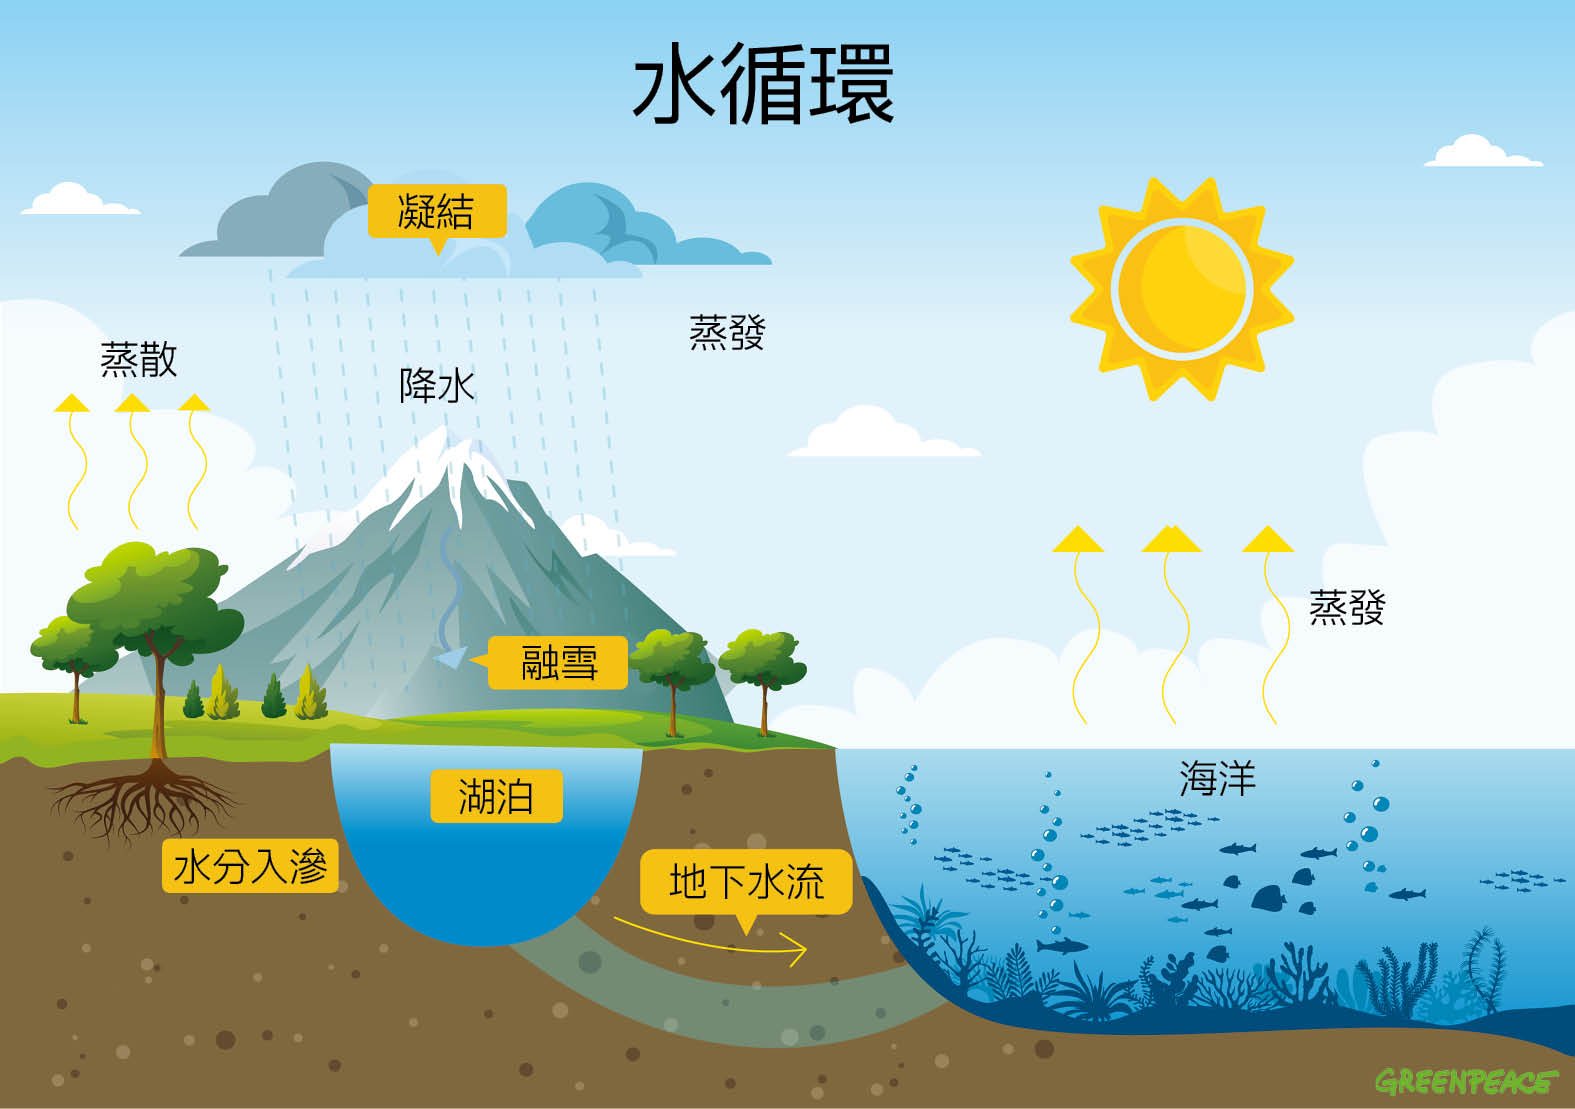 水的形態有液態（如河川和雨）、固態（如冰川和雪）和氣態（如雲和霧），經由太陽輻射能量驅動循環，主要過程分為三個階段：蒸發（evaporation）、凝結（condensation）和降水（percipitation），彼此無限重複循環。